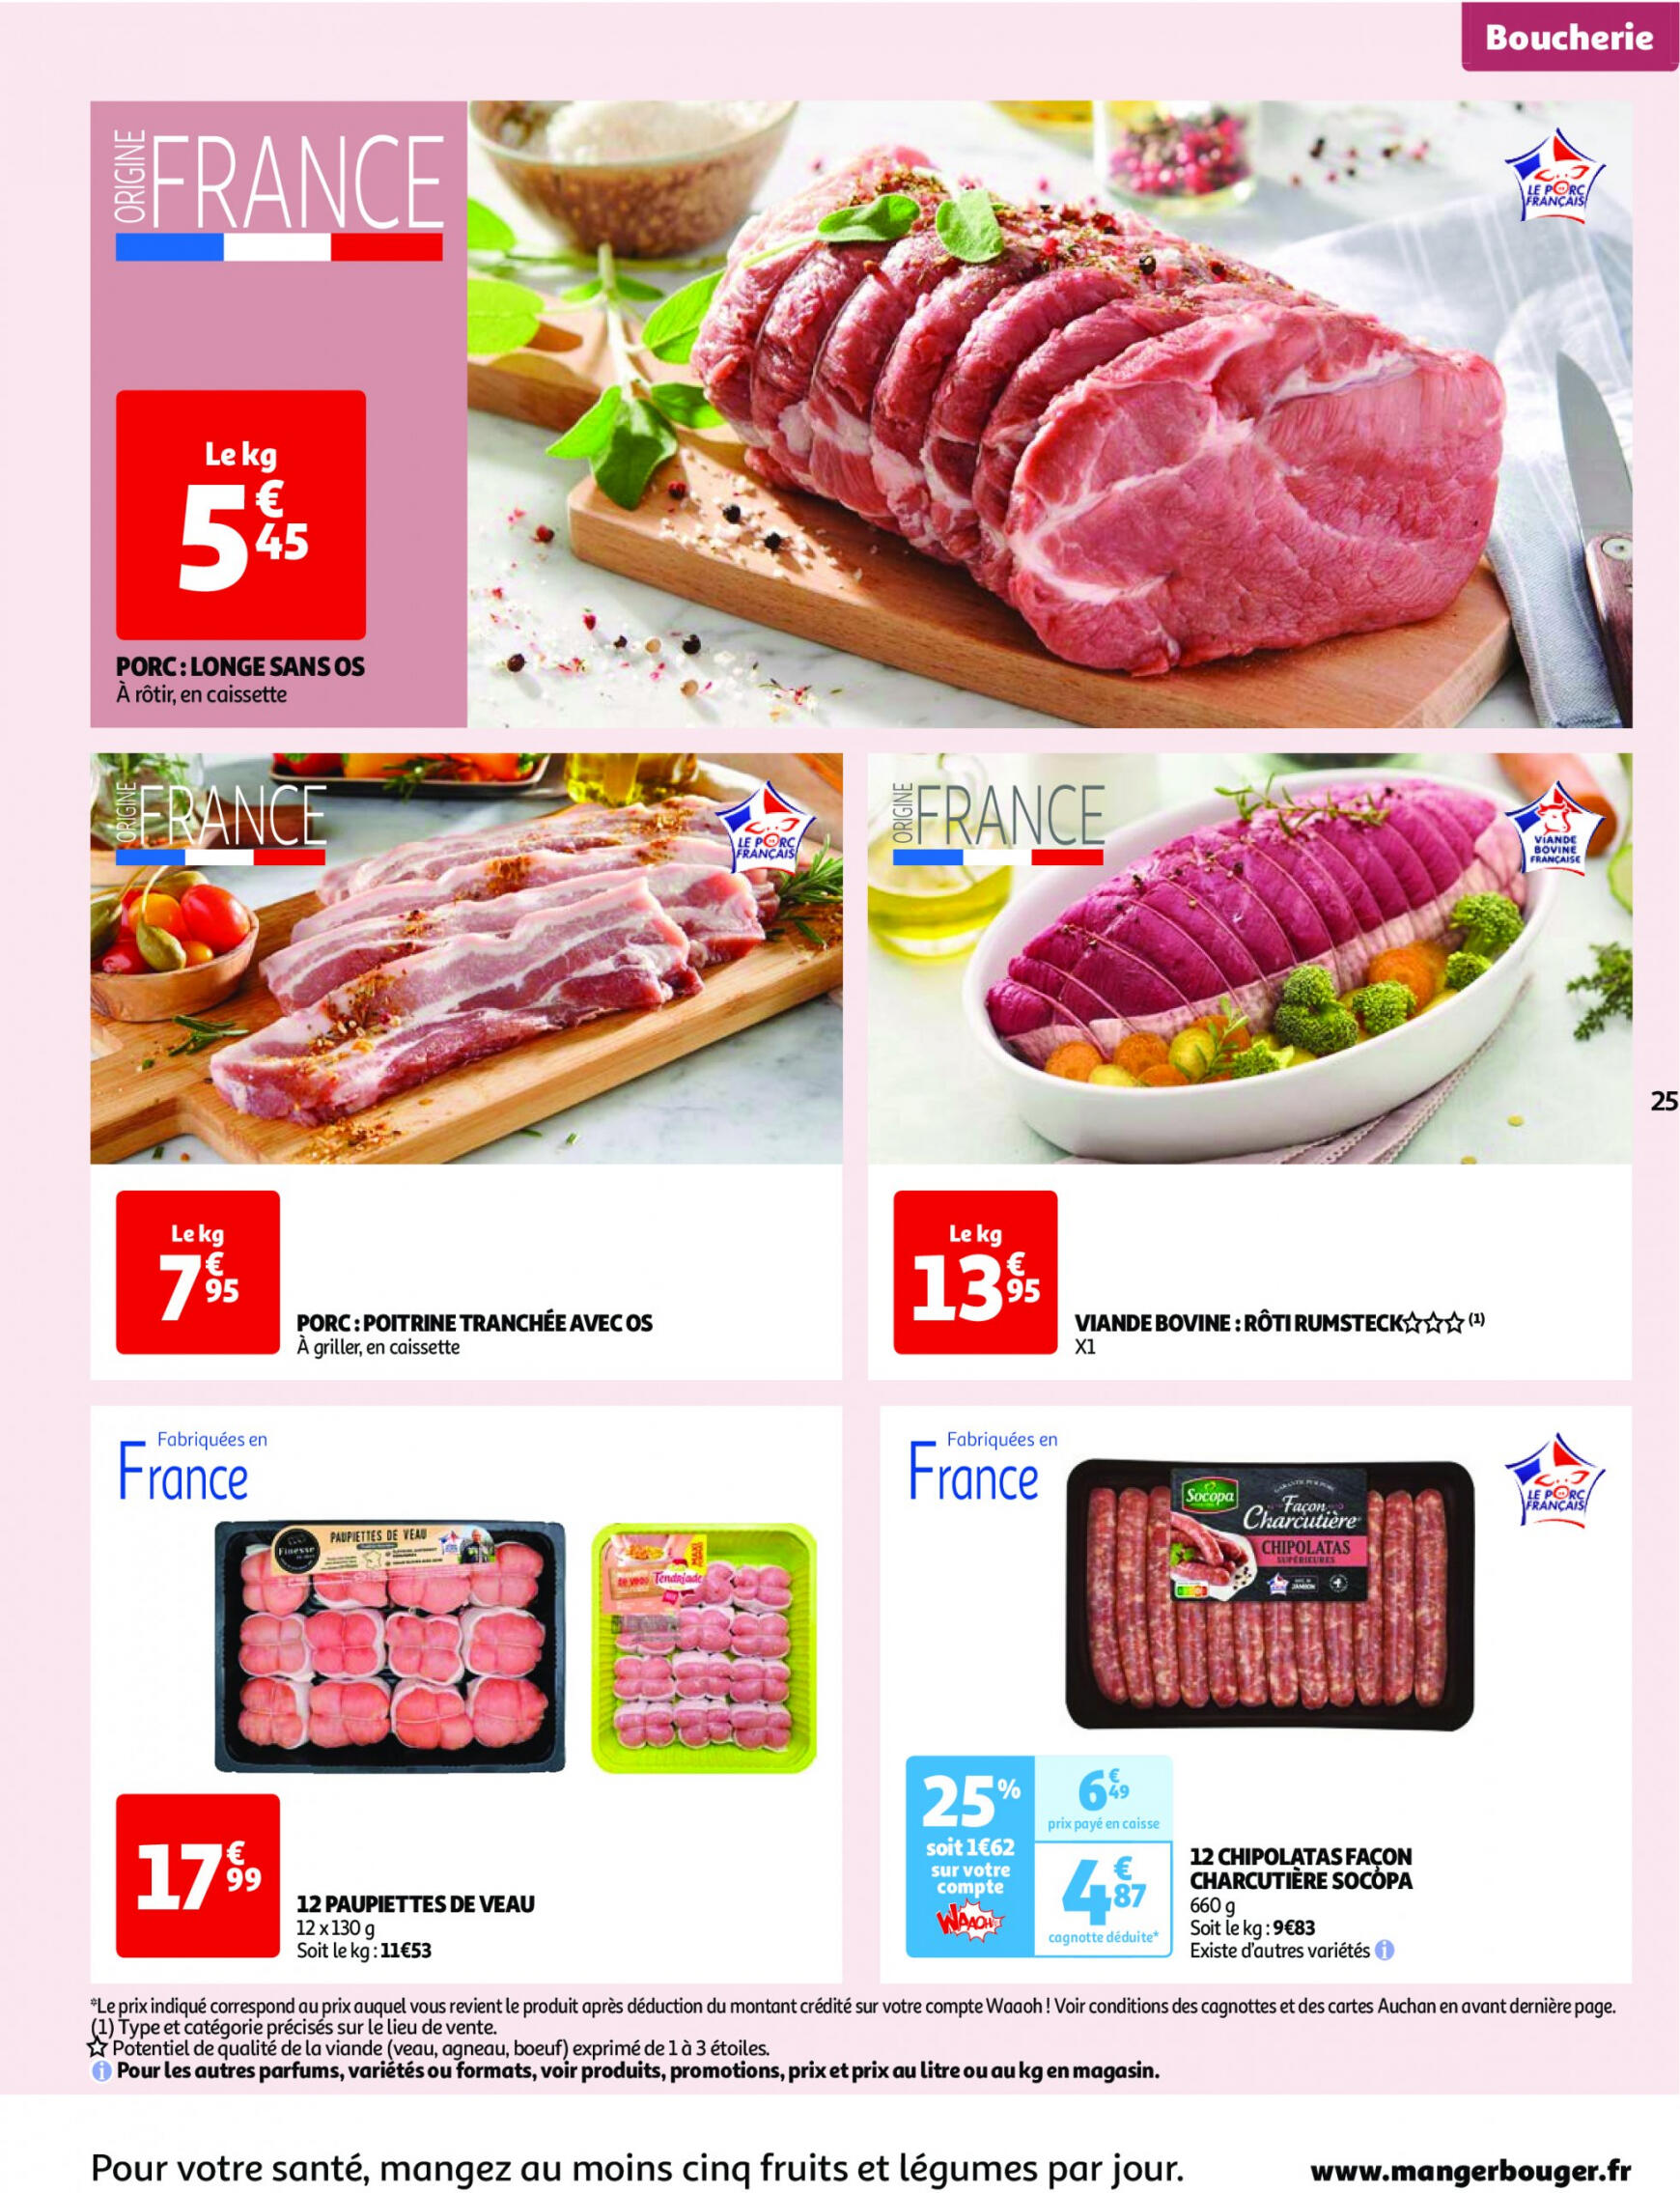 auchan - Prospectus Auchan actuel 30.04. - 06.05. - page: 25